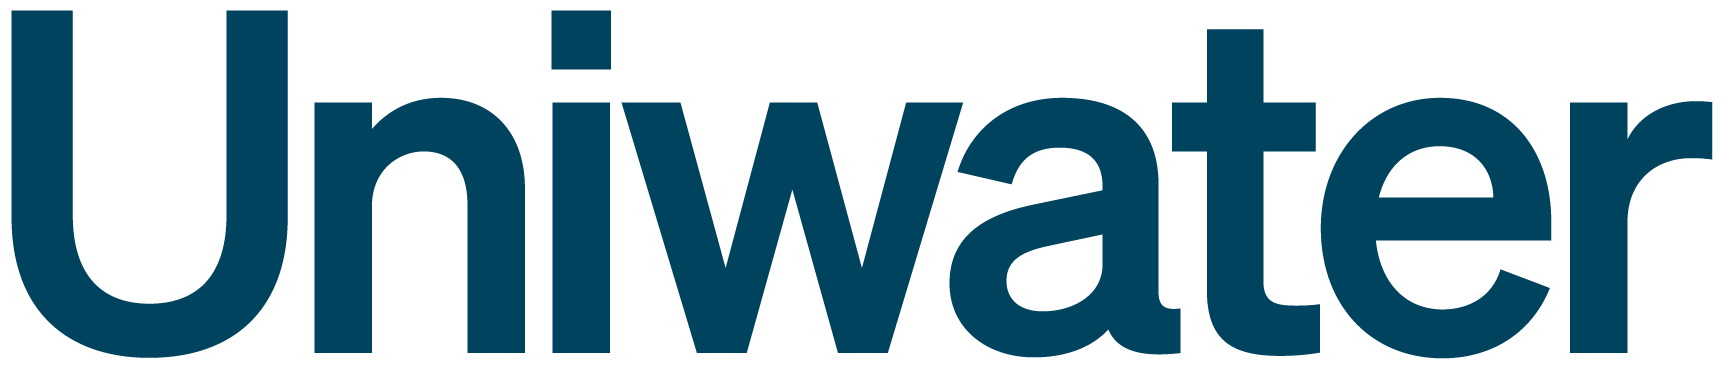 Uniwater logo